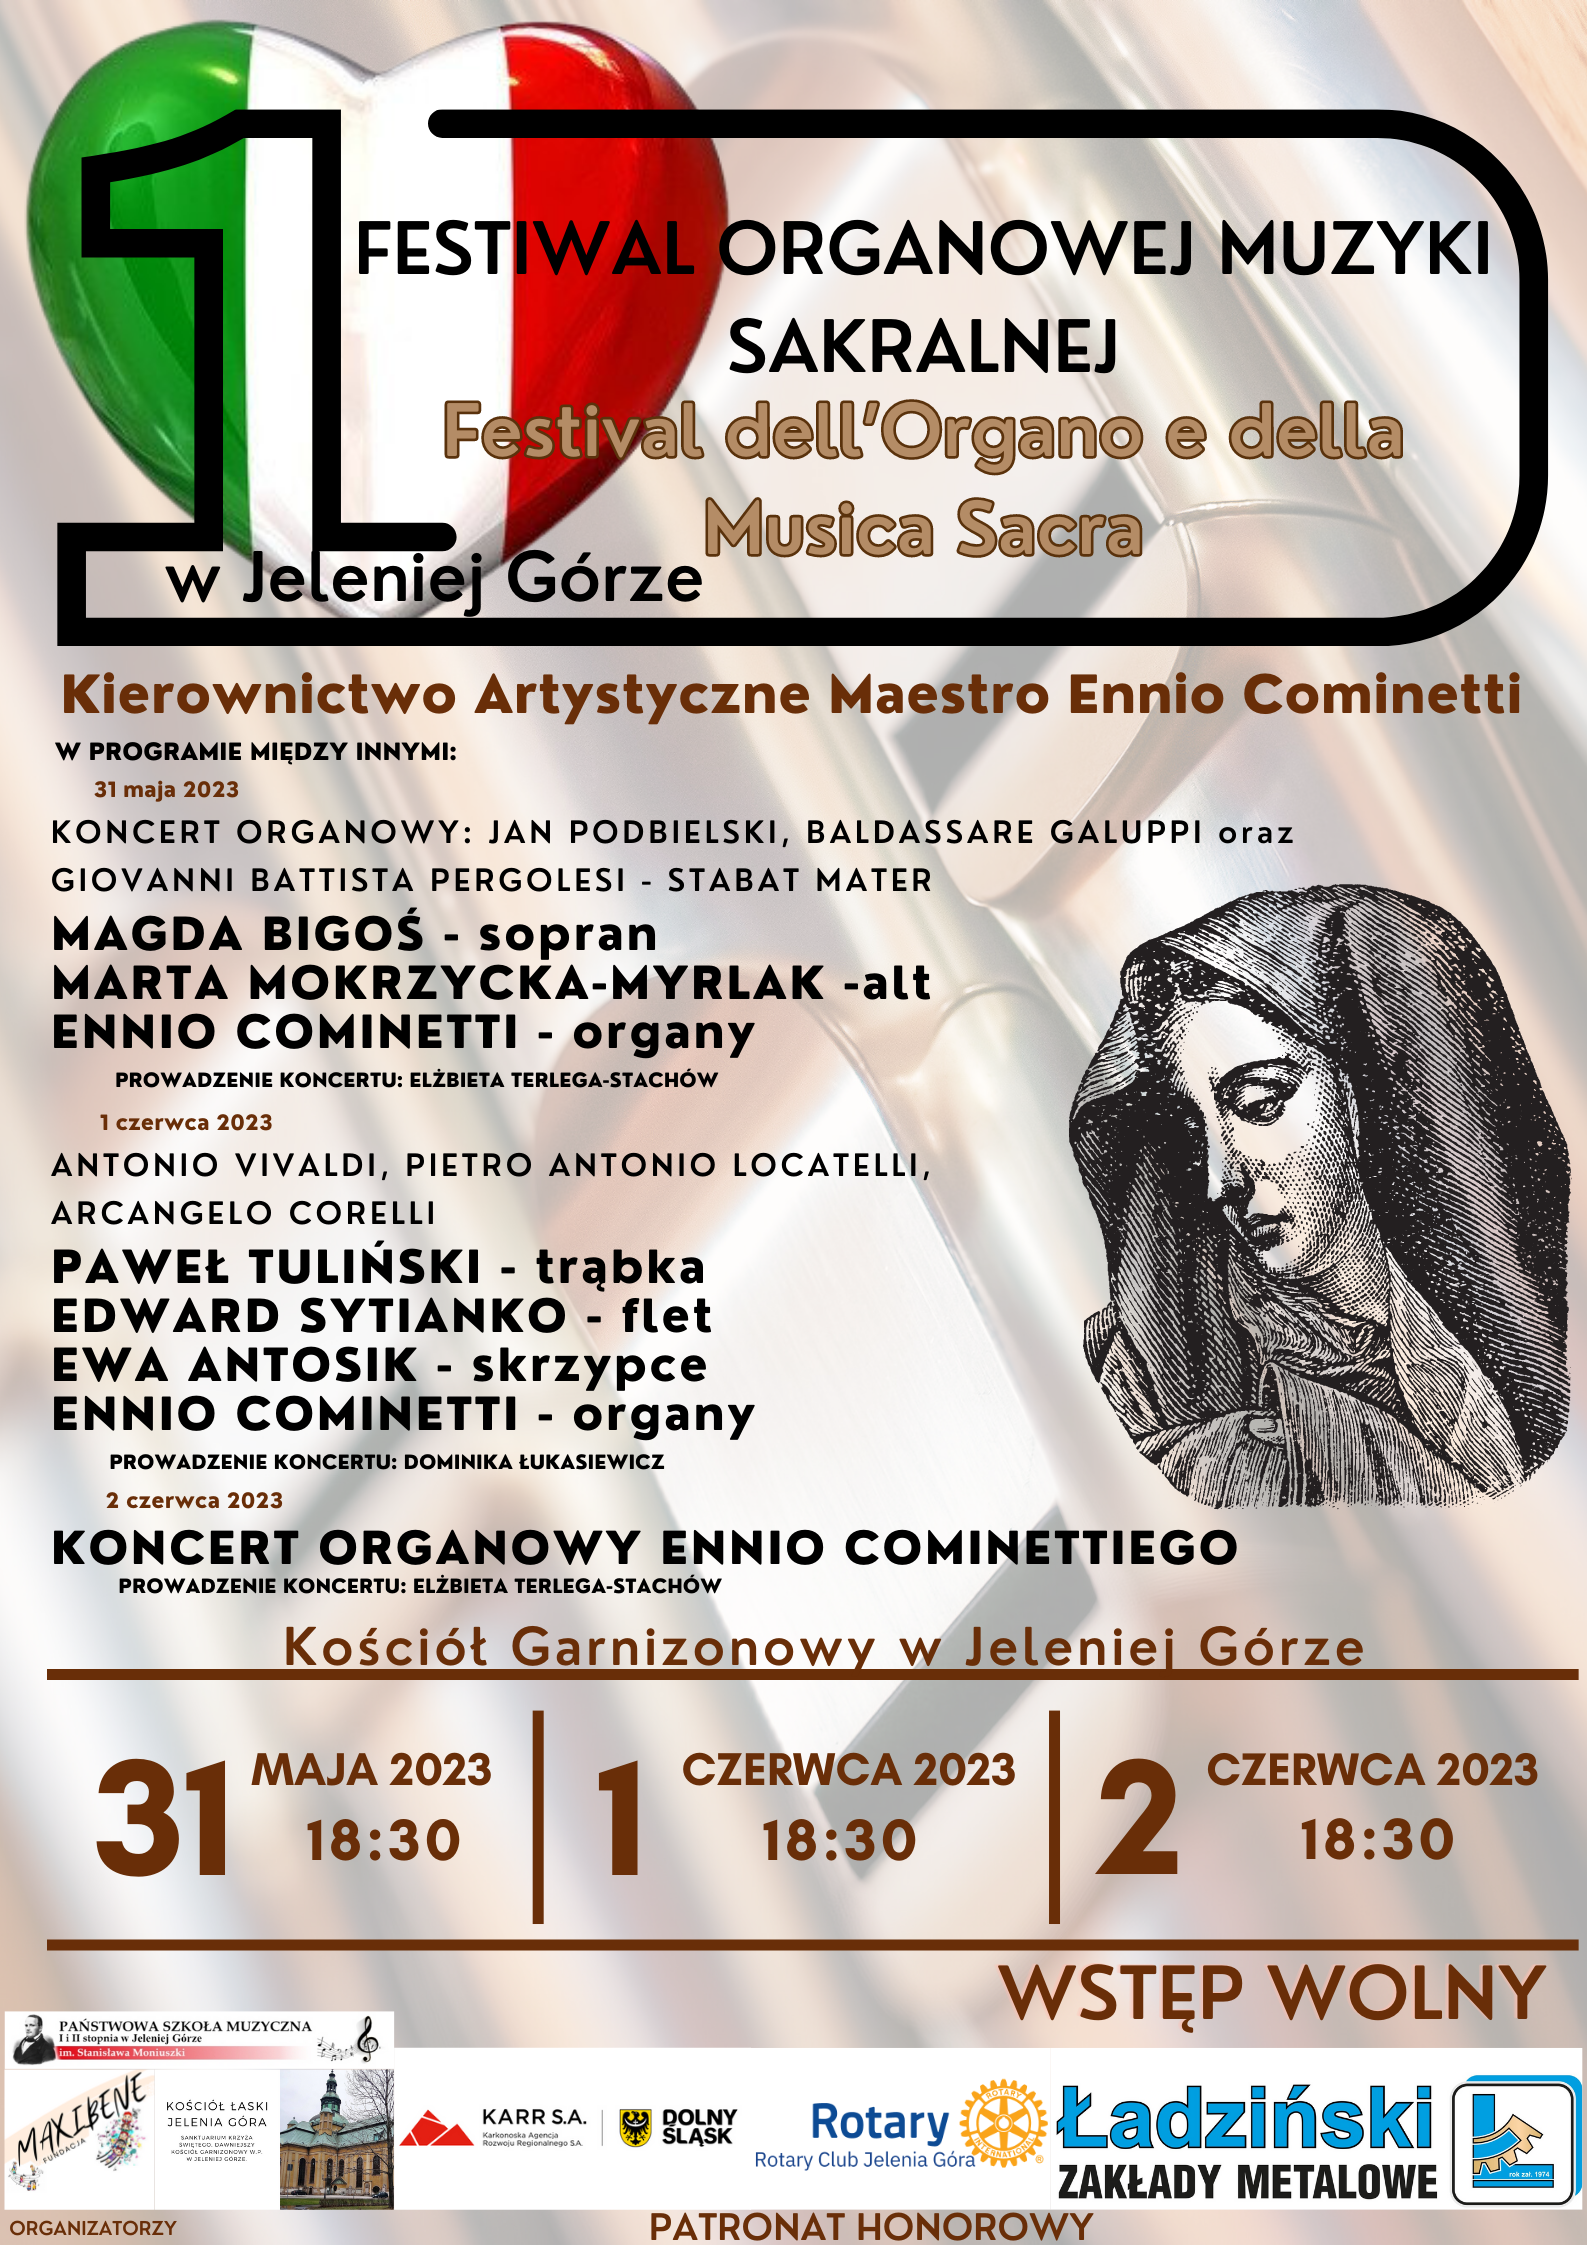 Plakat wydarzenia: wyróżniające się w górnej części serce w kolorach włoskiej flagi: zieleń, biel i czerwień Dużo treści dotyczącej wydarzenia: I FESTIWAL ORGANOWEJ MUZYKI SAKRALNEJ Festival dell'Organo e della Musica Sacra w Jeleniej Górze Kierownictwo Artystyczne Maestro Ennio Cominetti W PROGRAMIE MIĘDZY INNYMI: 31 maja 2023 KONCERT ORGANOWY: JAN PODBIELSKI, BALDASSARE GALUPPI oraz GIOVANNI BATTISTA PERGOLESI STABAT MATER MAGDA BIGOŚ – sopran, MARTA MOKRZYCKA-MYRLAK –alt, ENNIO COMINETTI - organy PROWADZENIE KONCERTU: ELŻBIETA TERLEGA-STACHÓW 1 czerwca 2023 ANTONIO VIVALDI, PIETRO ANTONIO LOCATELLI, ARCANGELO CORELLI, PAWEŁ TULIŃSKI – trąbka, EDWARD SYTIANKO – flet, EWA ANTOSIK – skrzypce, ENNIO COMINETTI - organy PROWADZENIE KONCERTU: DOMINIKA ŁUKASIEWICZ 2 czerwca 2023 KONCERT ORGANOWY ENNIO COMINETTIEGO PROWADZENIE KONCERTU: ELŻBIETA TERLEGA-STACHÓW Miejsce wydarzenia: Kościół Garnizonowy w Jeleniej Górze 31 MAJA 2023 18:30, 1 CZERWCA 2023 18:30, 2 CZERWCA 2023 18:30 WSTĘP WOLNY Na plakacie umieszczona rycina przedstawiającą Matkę Boską Maryję Na dole umieszczone loga: organizatorów PSM I i II stopnia, im. Stanisława Moniuszki w Jeleniej Górze, Fundacji Maxibene, Kościół Garnizonowy w Jeleniej Górze oraz Patronat honorowy: KARR, Rotary Club Jelenia Góra, Ładziński Zakłady Metalowe